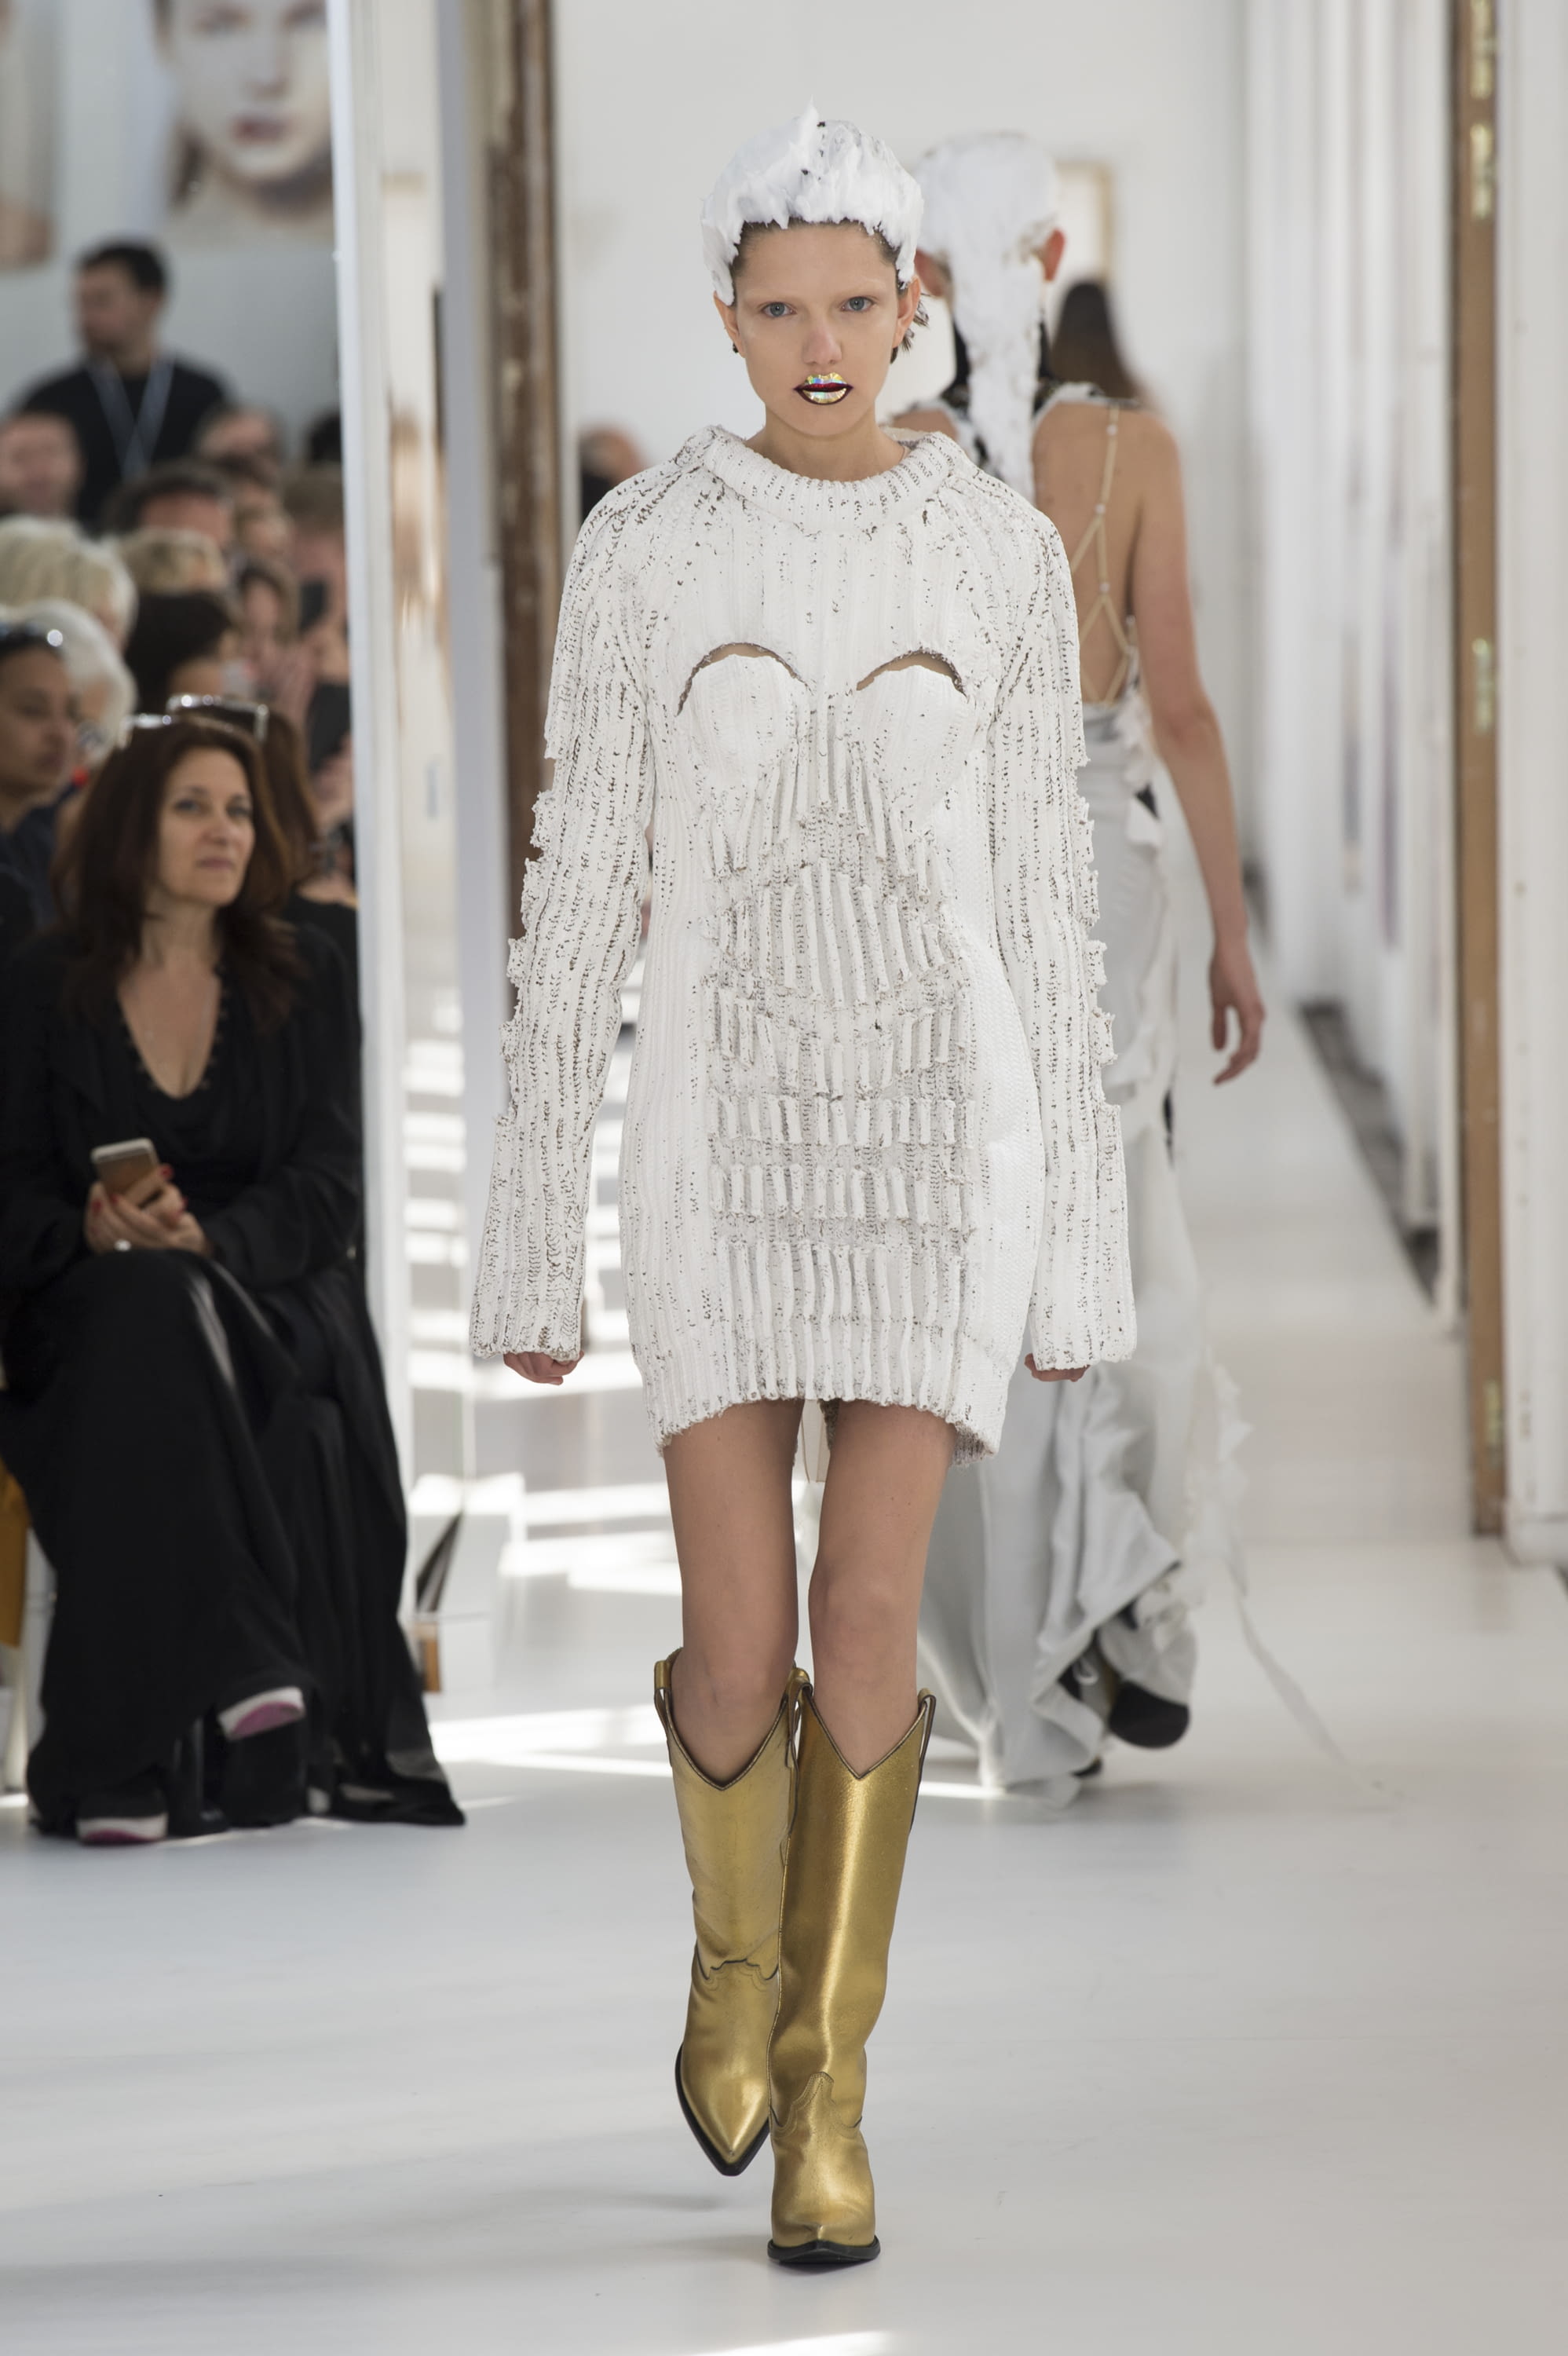 Emilio Pucci F/W 17 womenswear #23 - Tagwalk: The Fashion Search